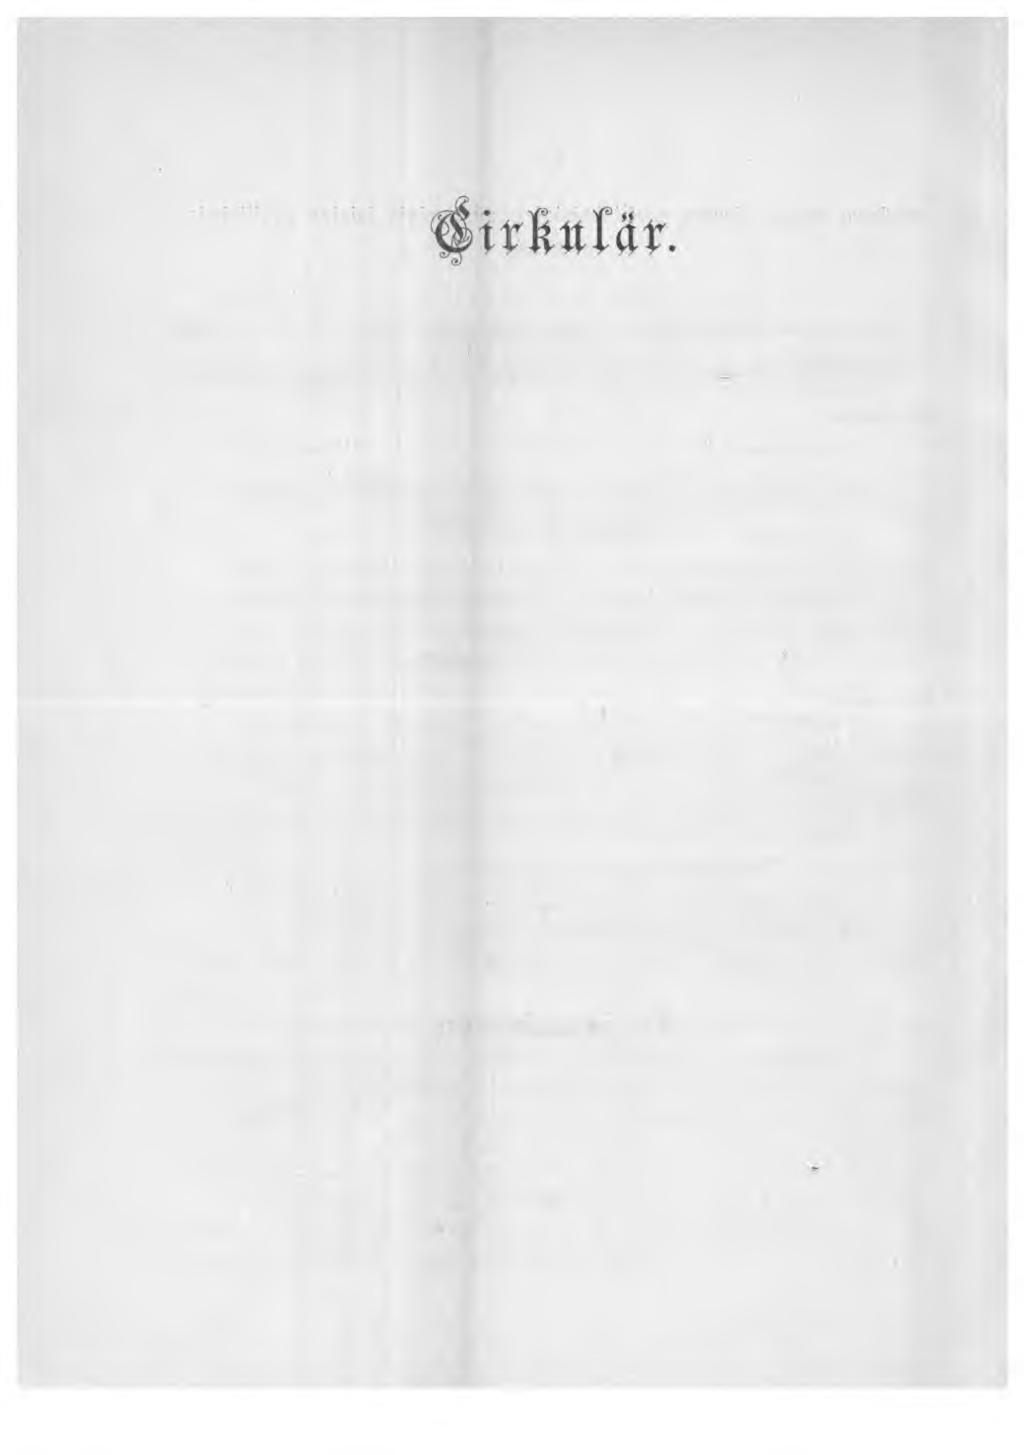 1905. Från P o ststy r else n i Finland. N:o X. 14. Angående inrättande af nya och ombildning af särskilda förut befintliga postanstalter.